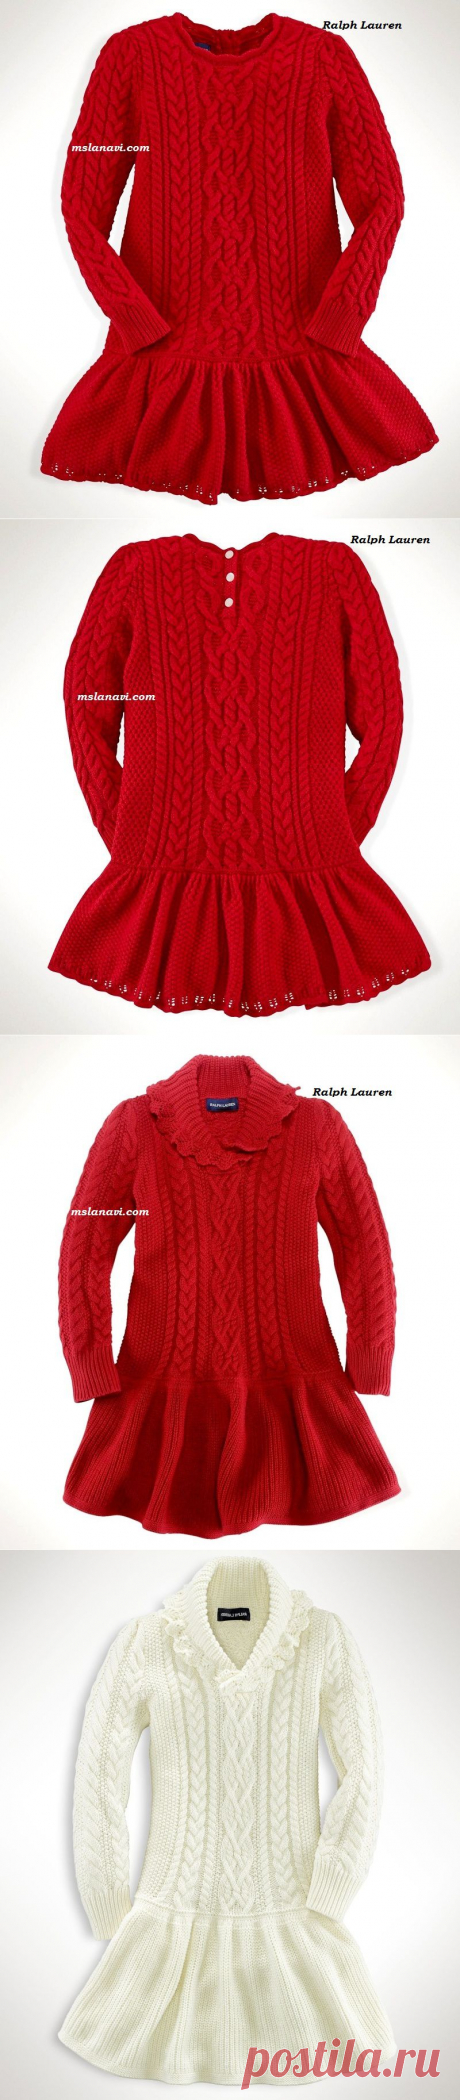 Вяжем с Ланой » Красивые вязаные платья для девочек от Ralph Lauren